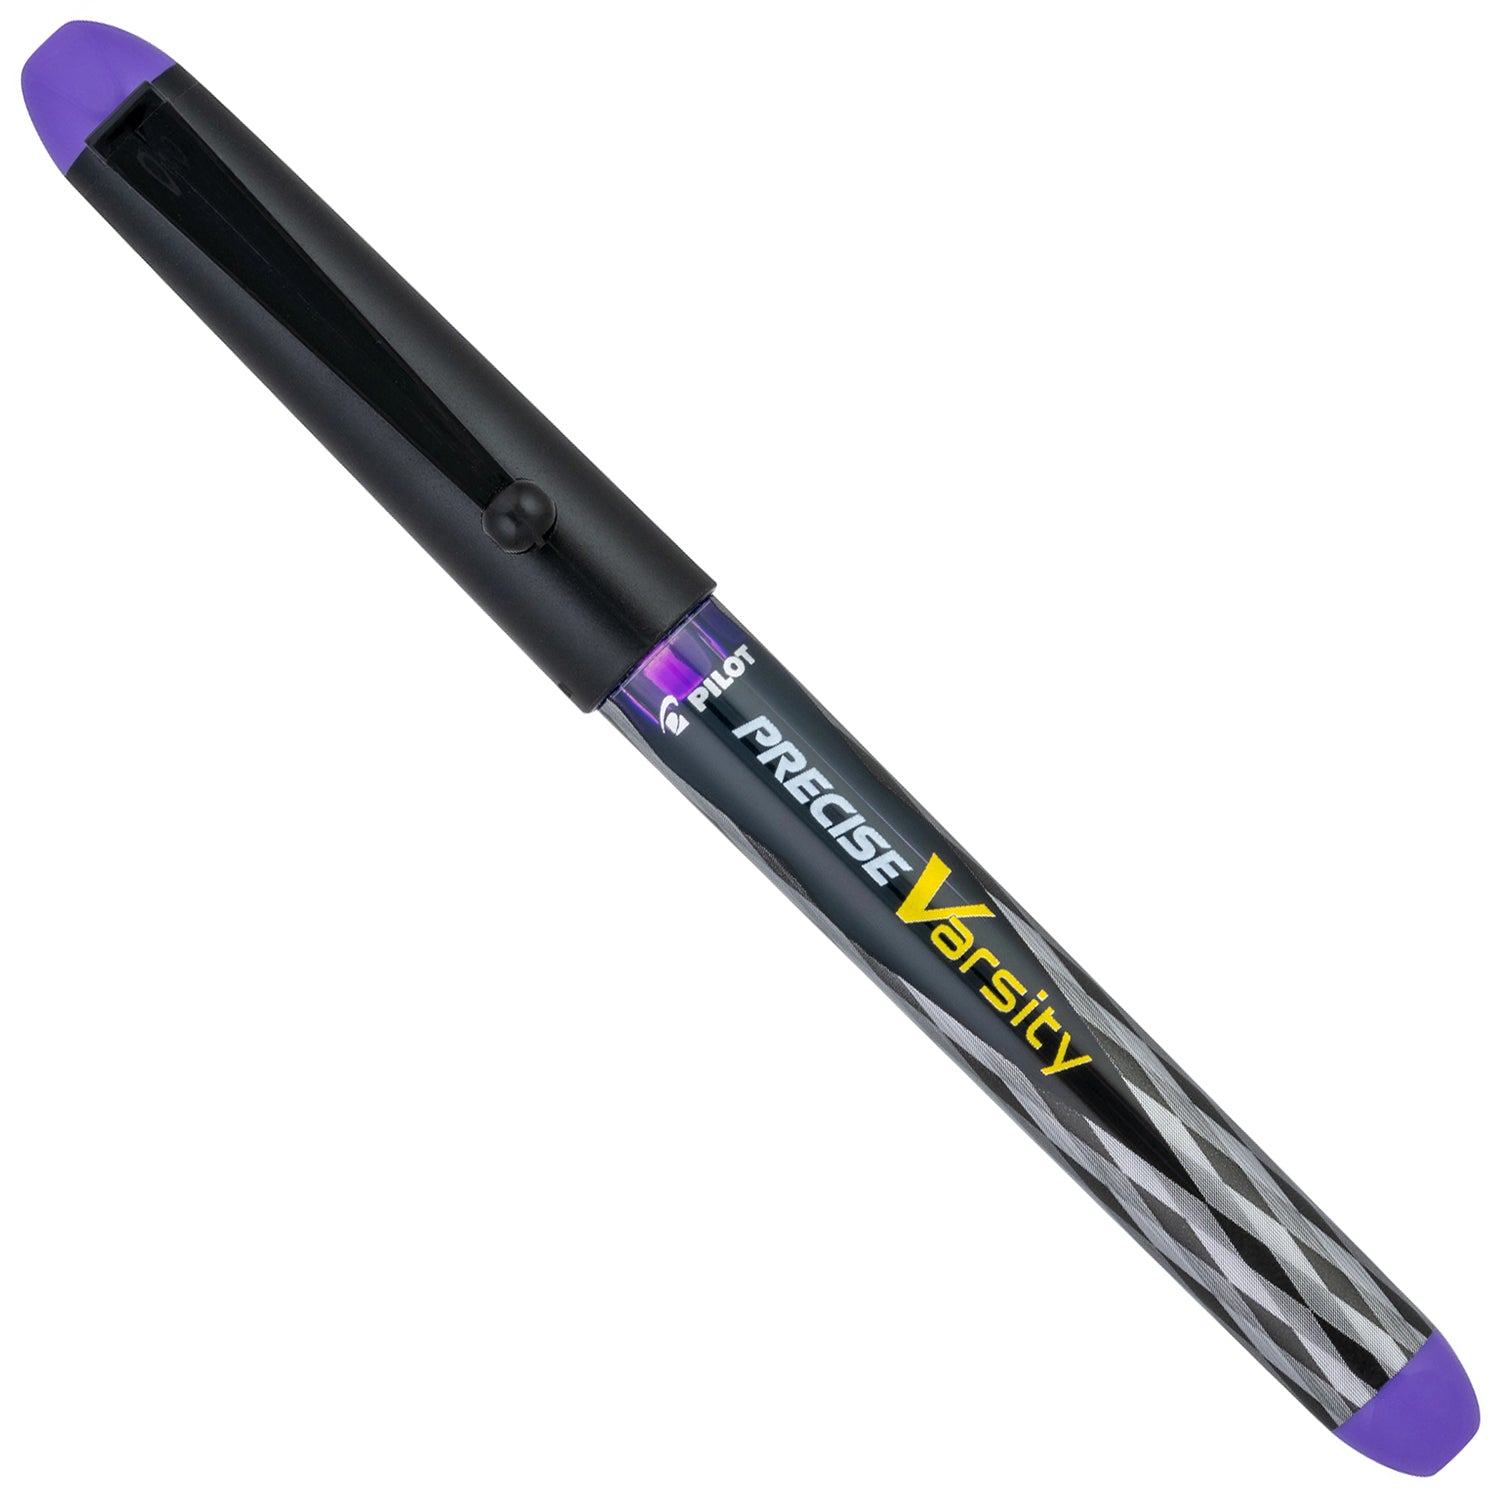 Pilot Varsity Disposable Fountain Pen - Purple capped